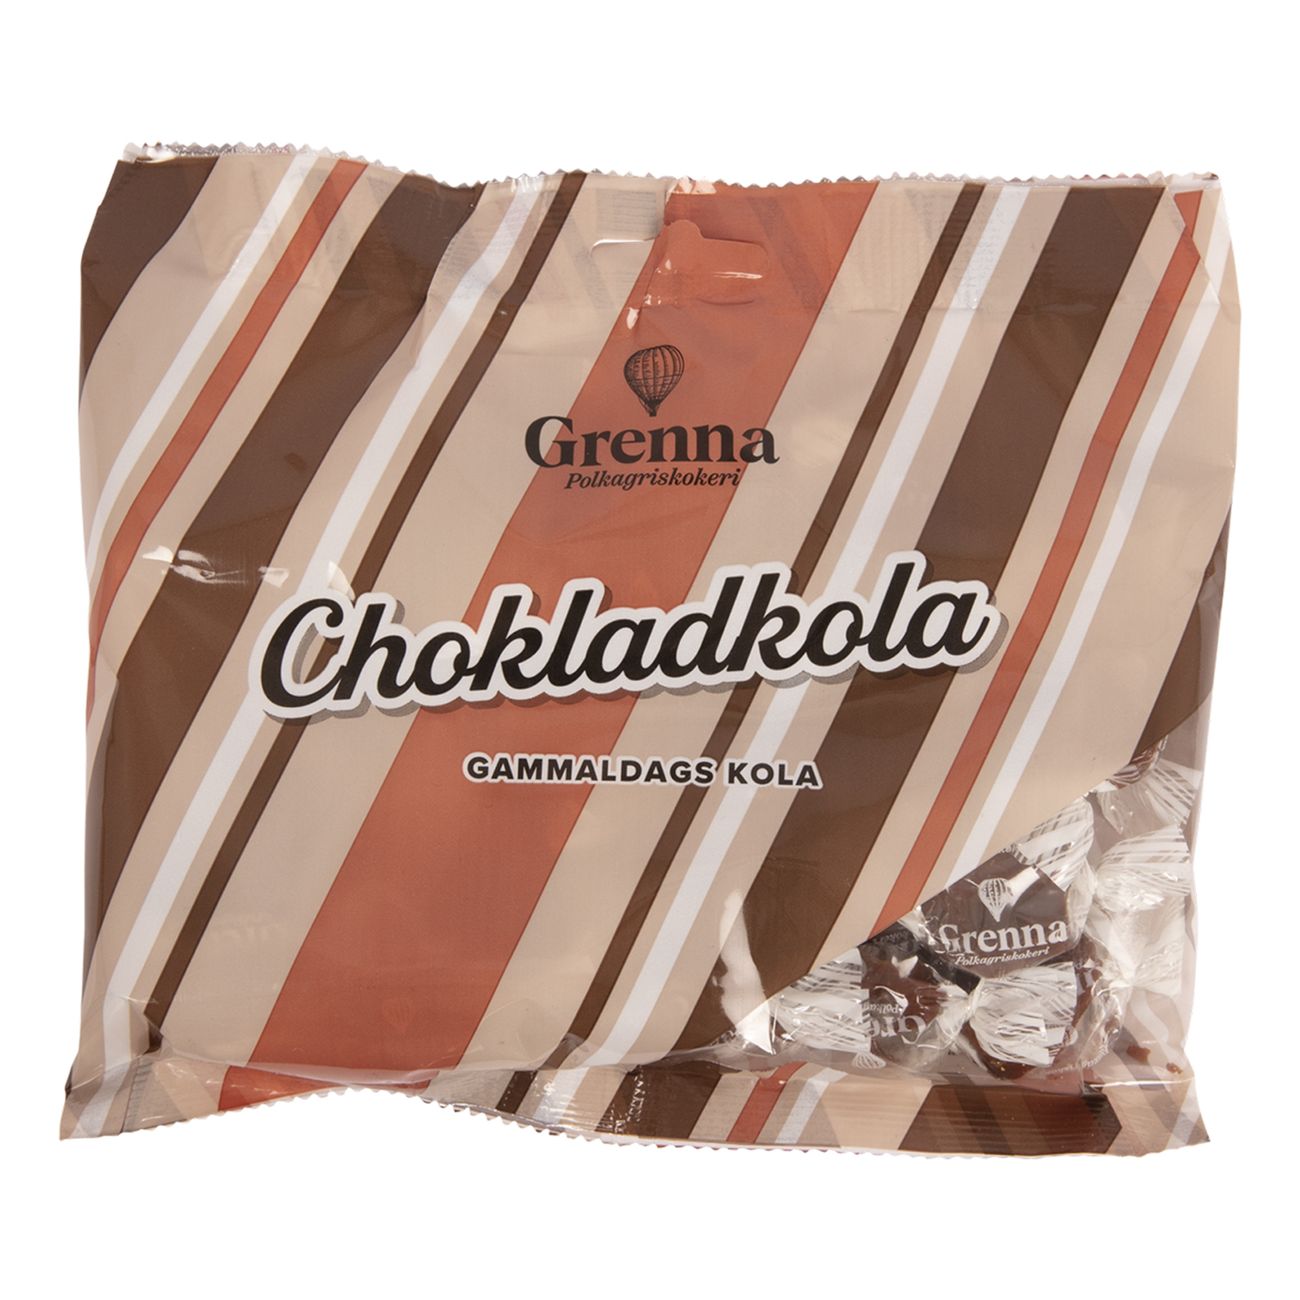 grenna-chokladkola-100769-1